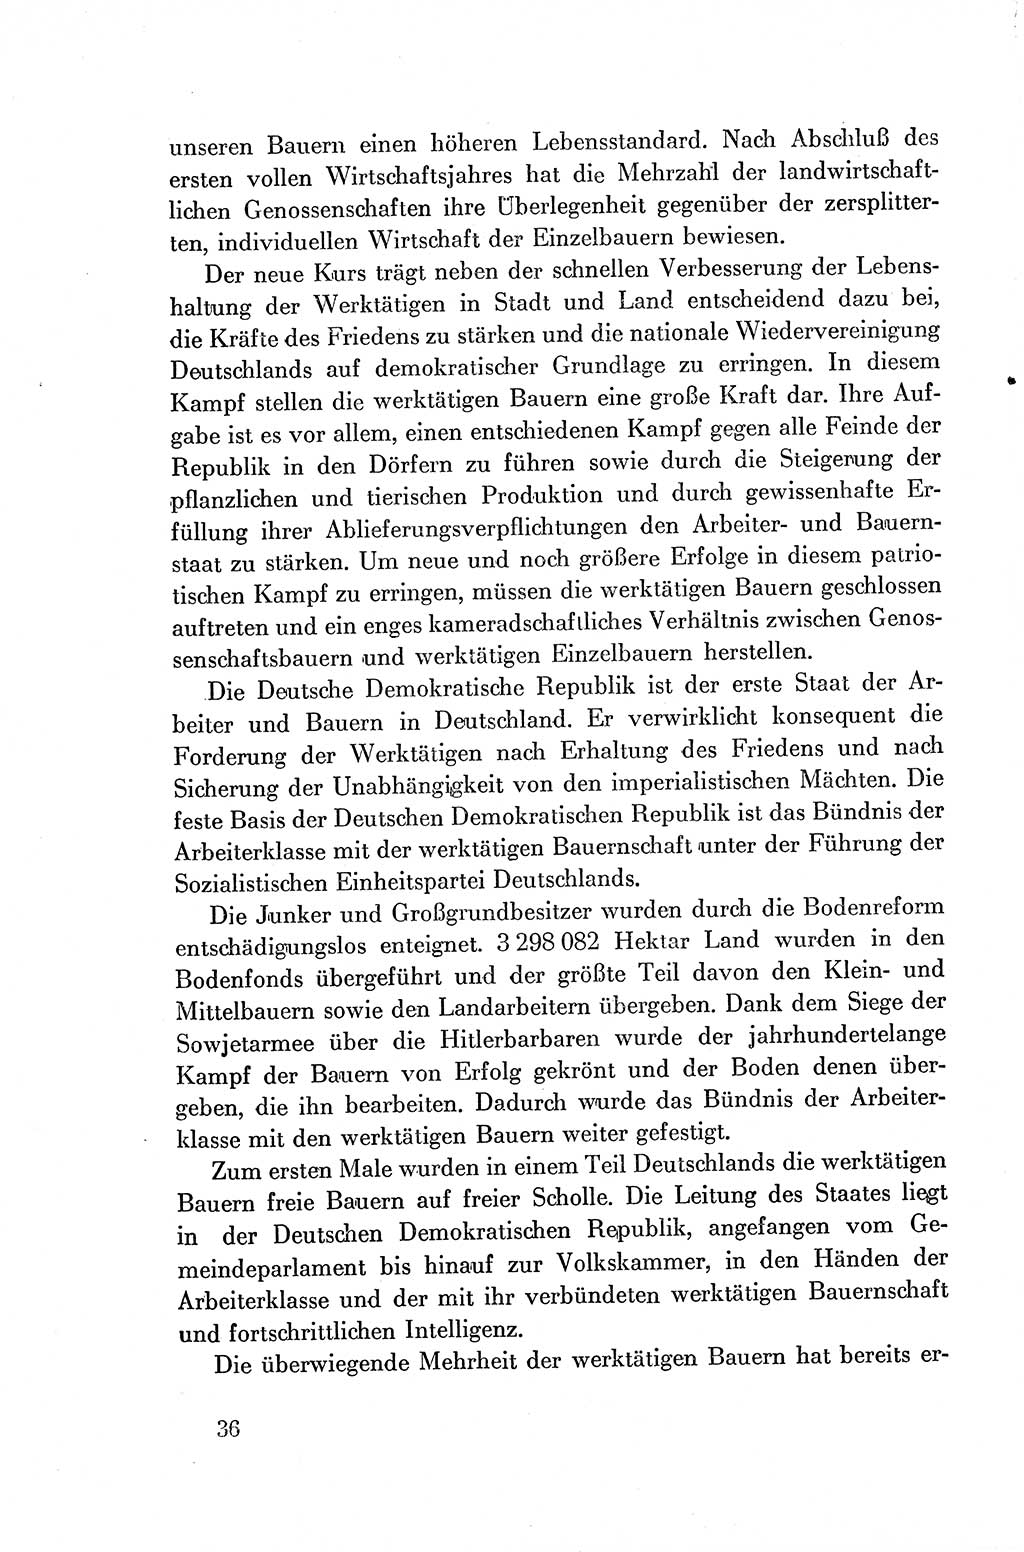 Dokumente der Sozialistischen Einheitspartei Deutschlands (SED) [Deutsche Demokratische Republik (DDR)] 1954-1955, Seite 36 (Dok. SED DDR 1954-1955, S. 36)